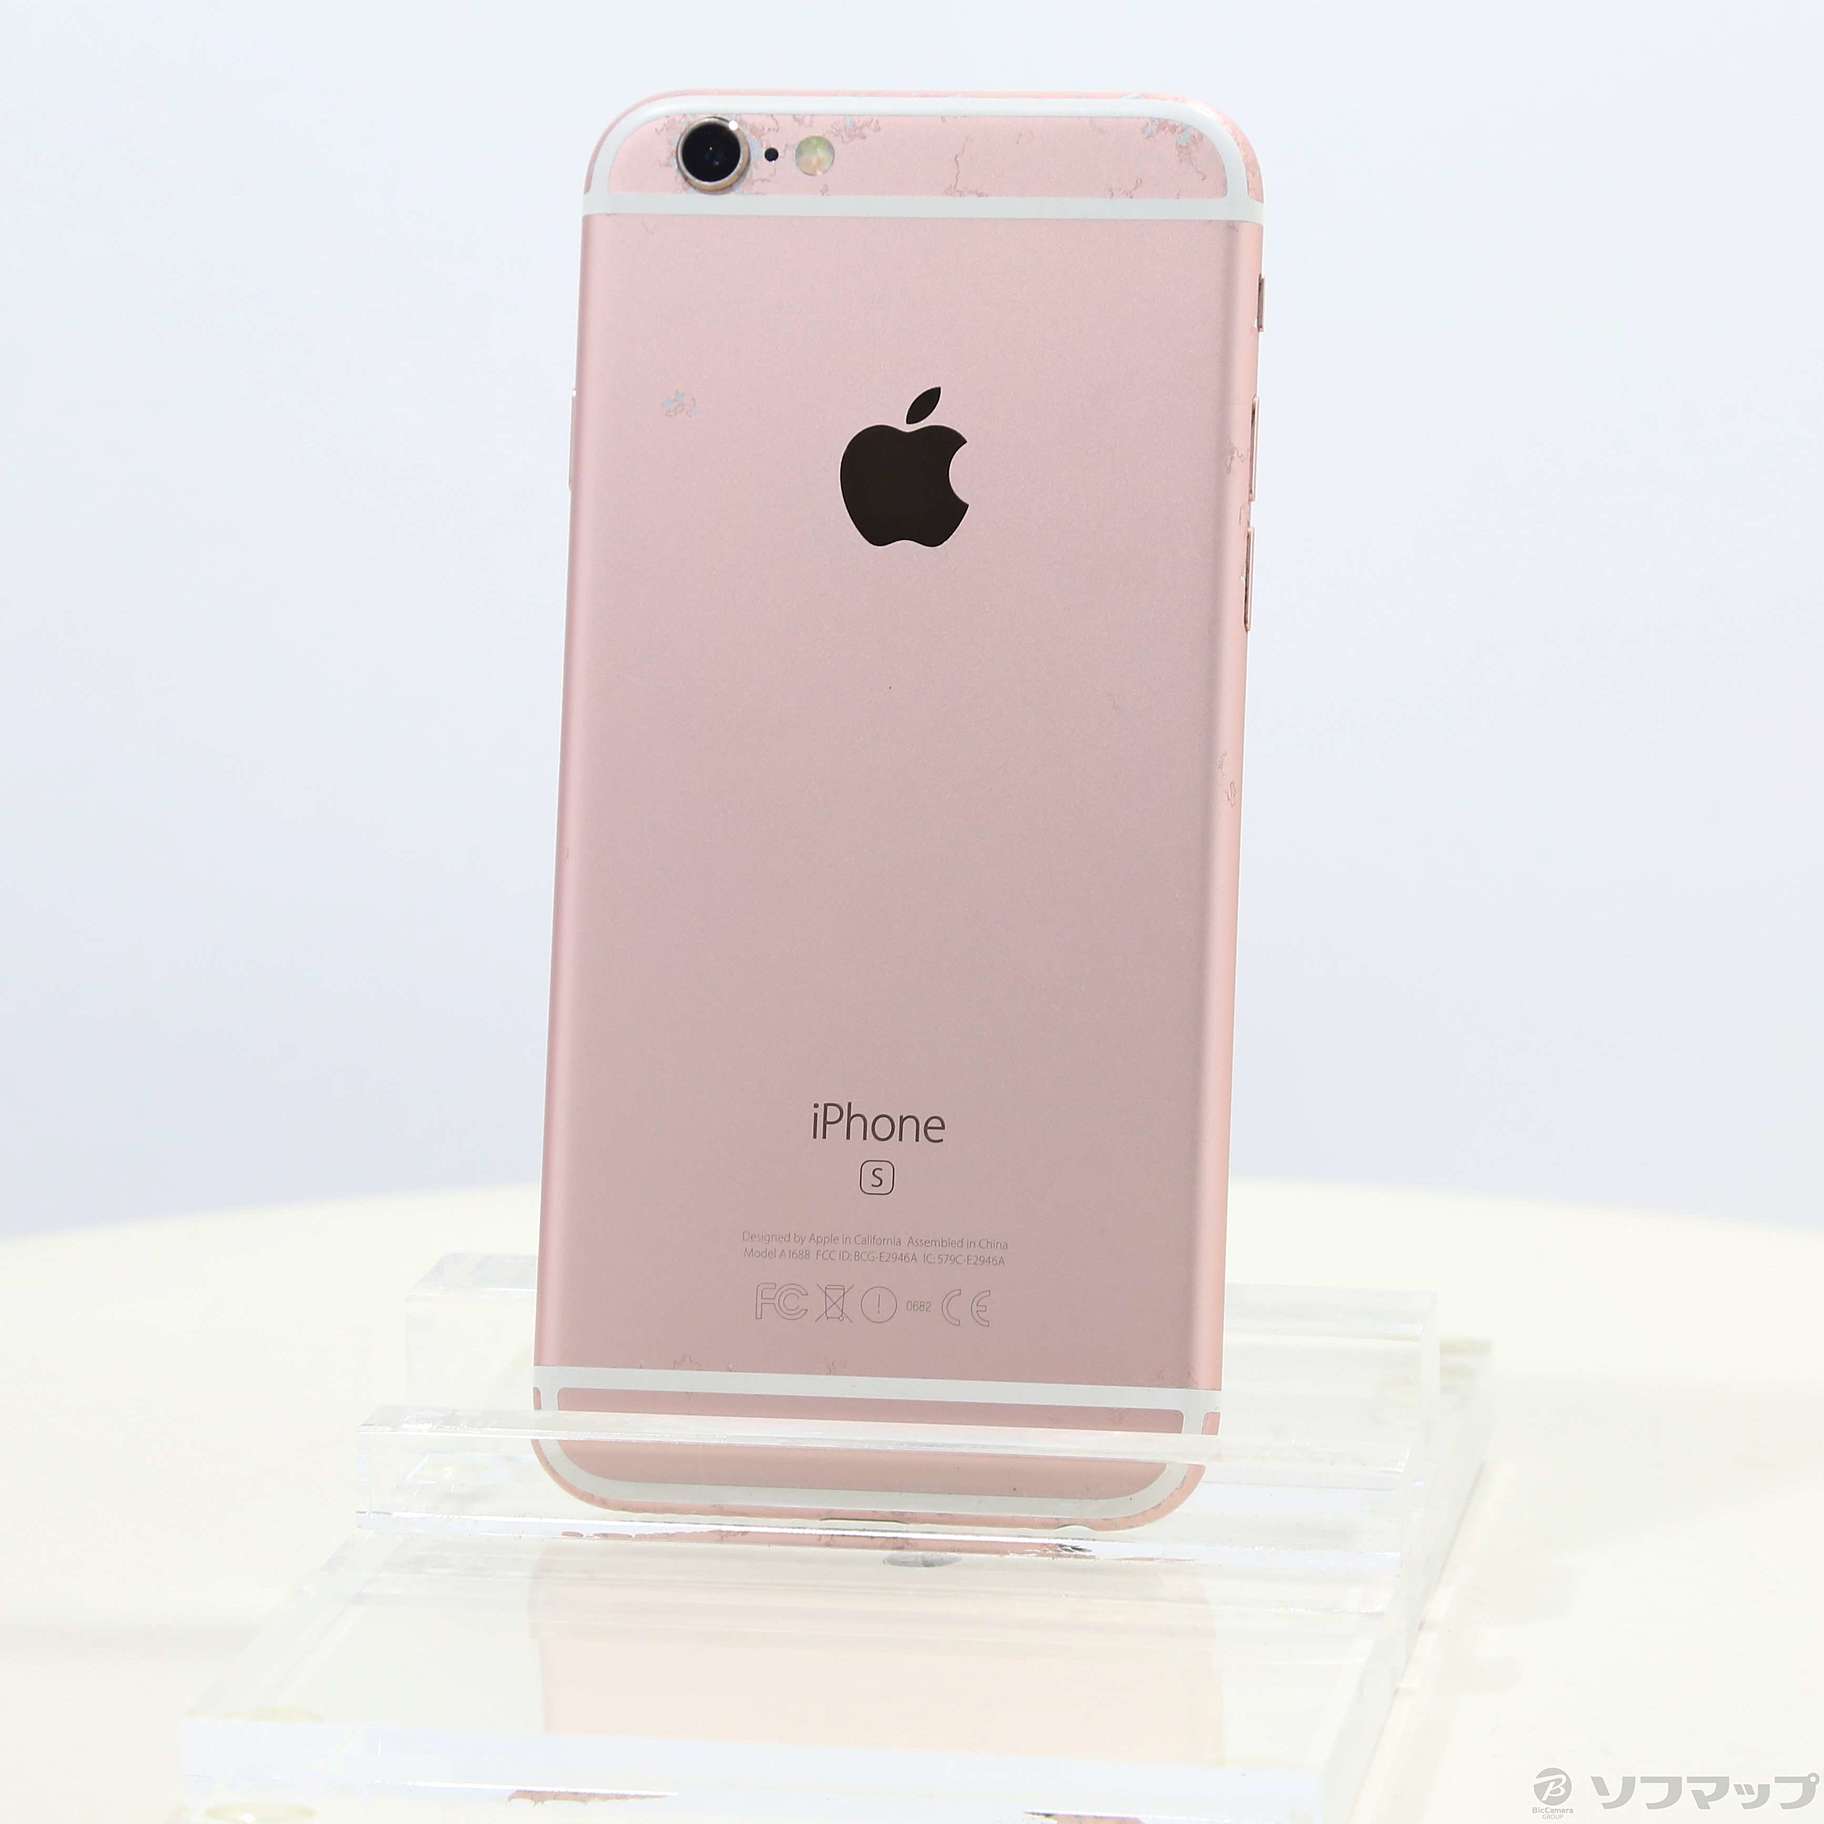 iPhone 6s Rose Gold 64 GB docomo